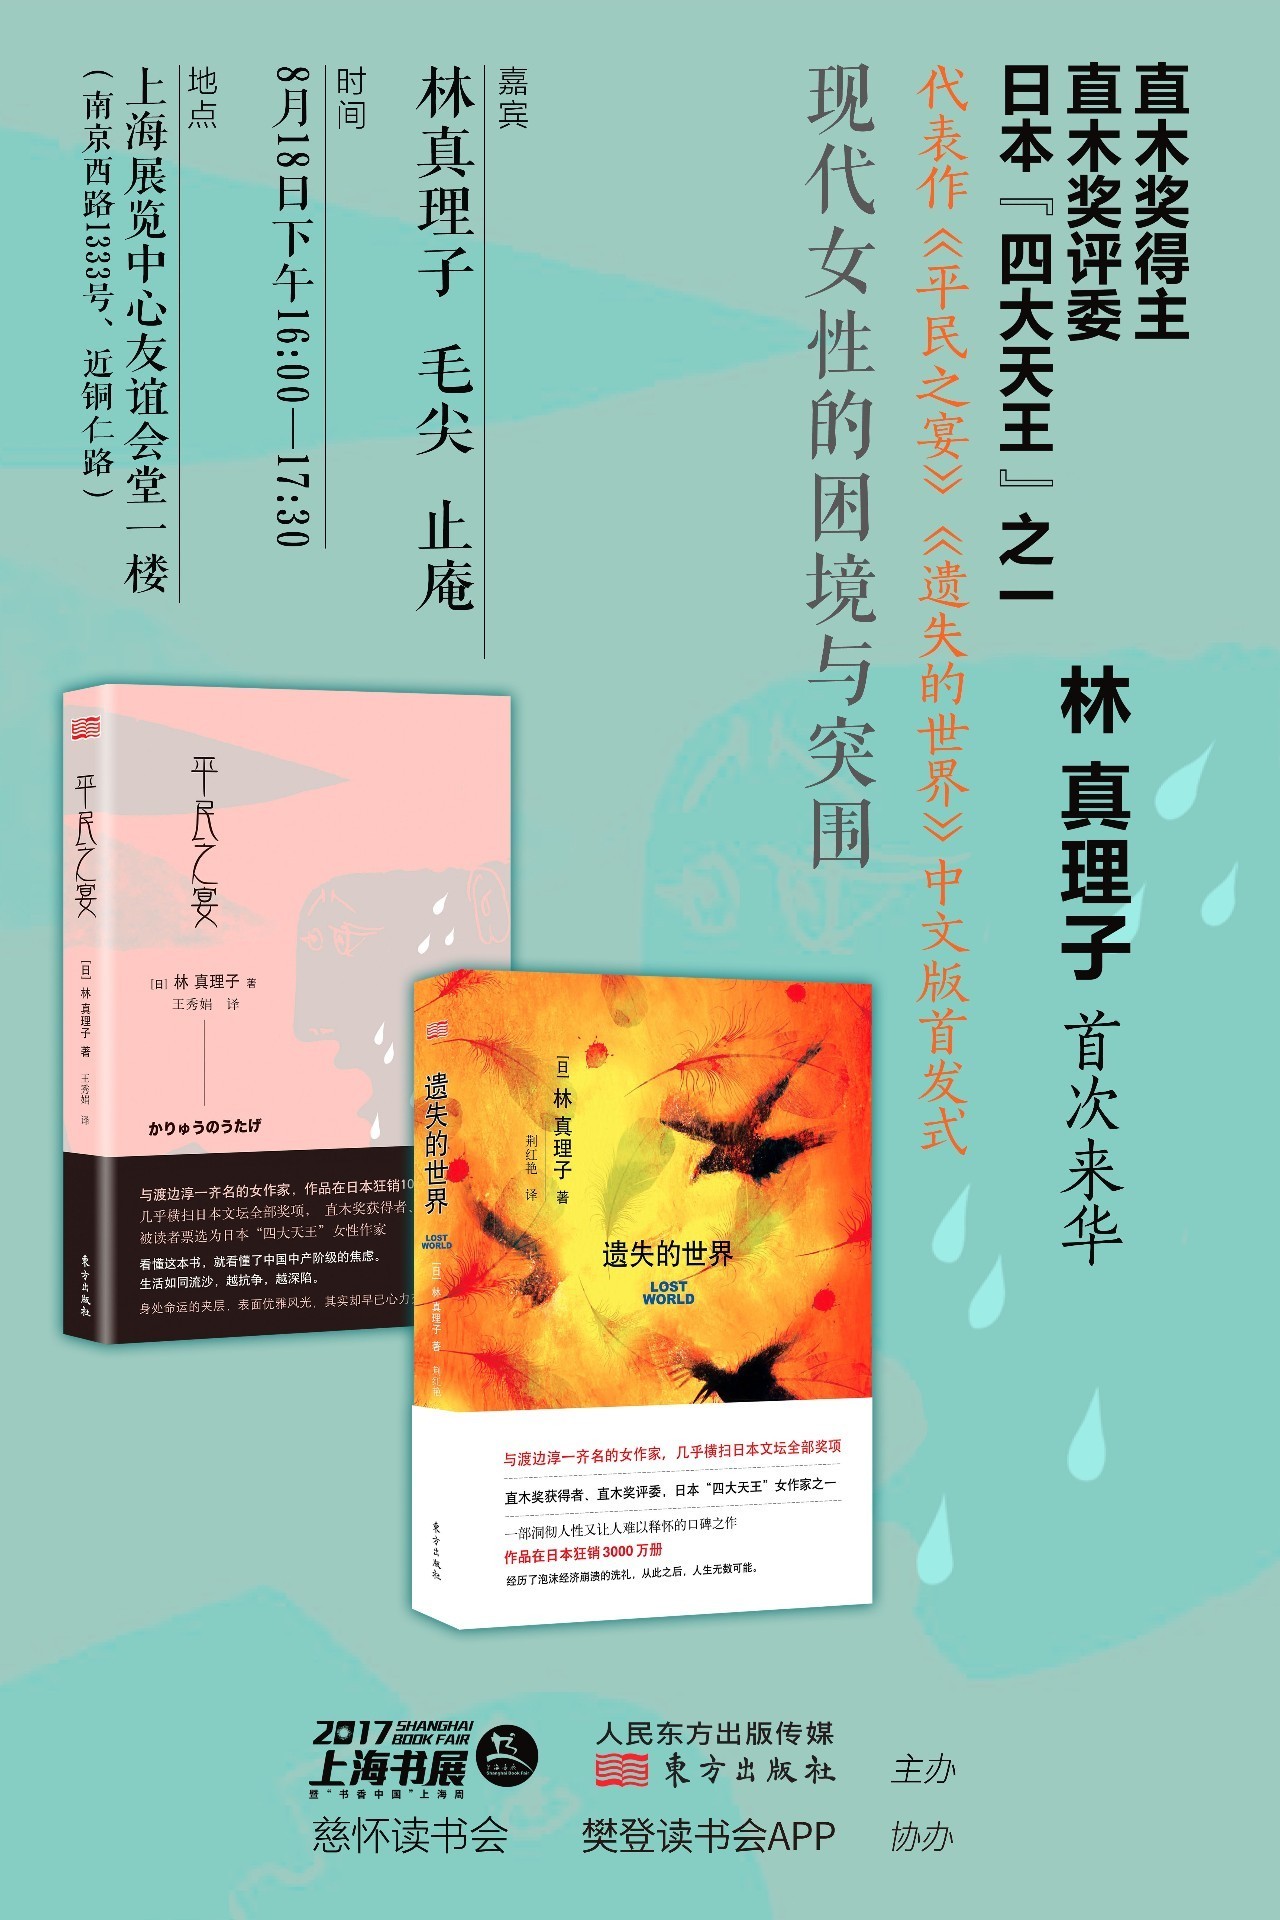 日本直木奖得主 评委林真理子首次来华 文学周重磅活动报名